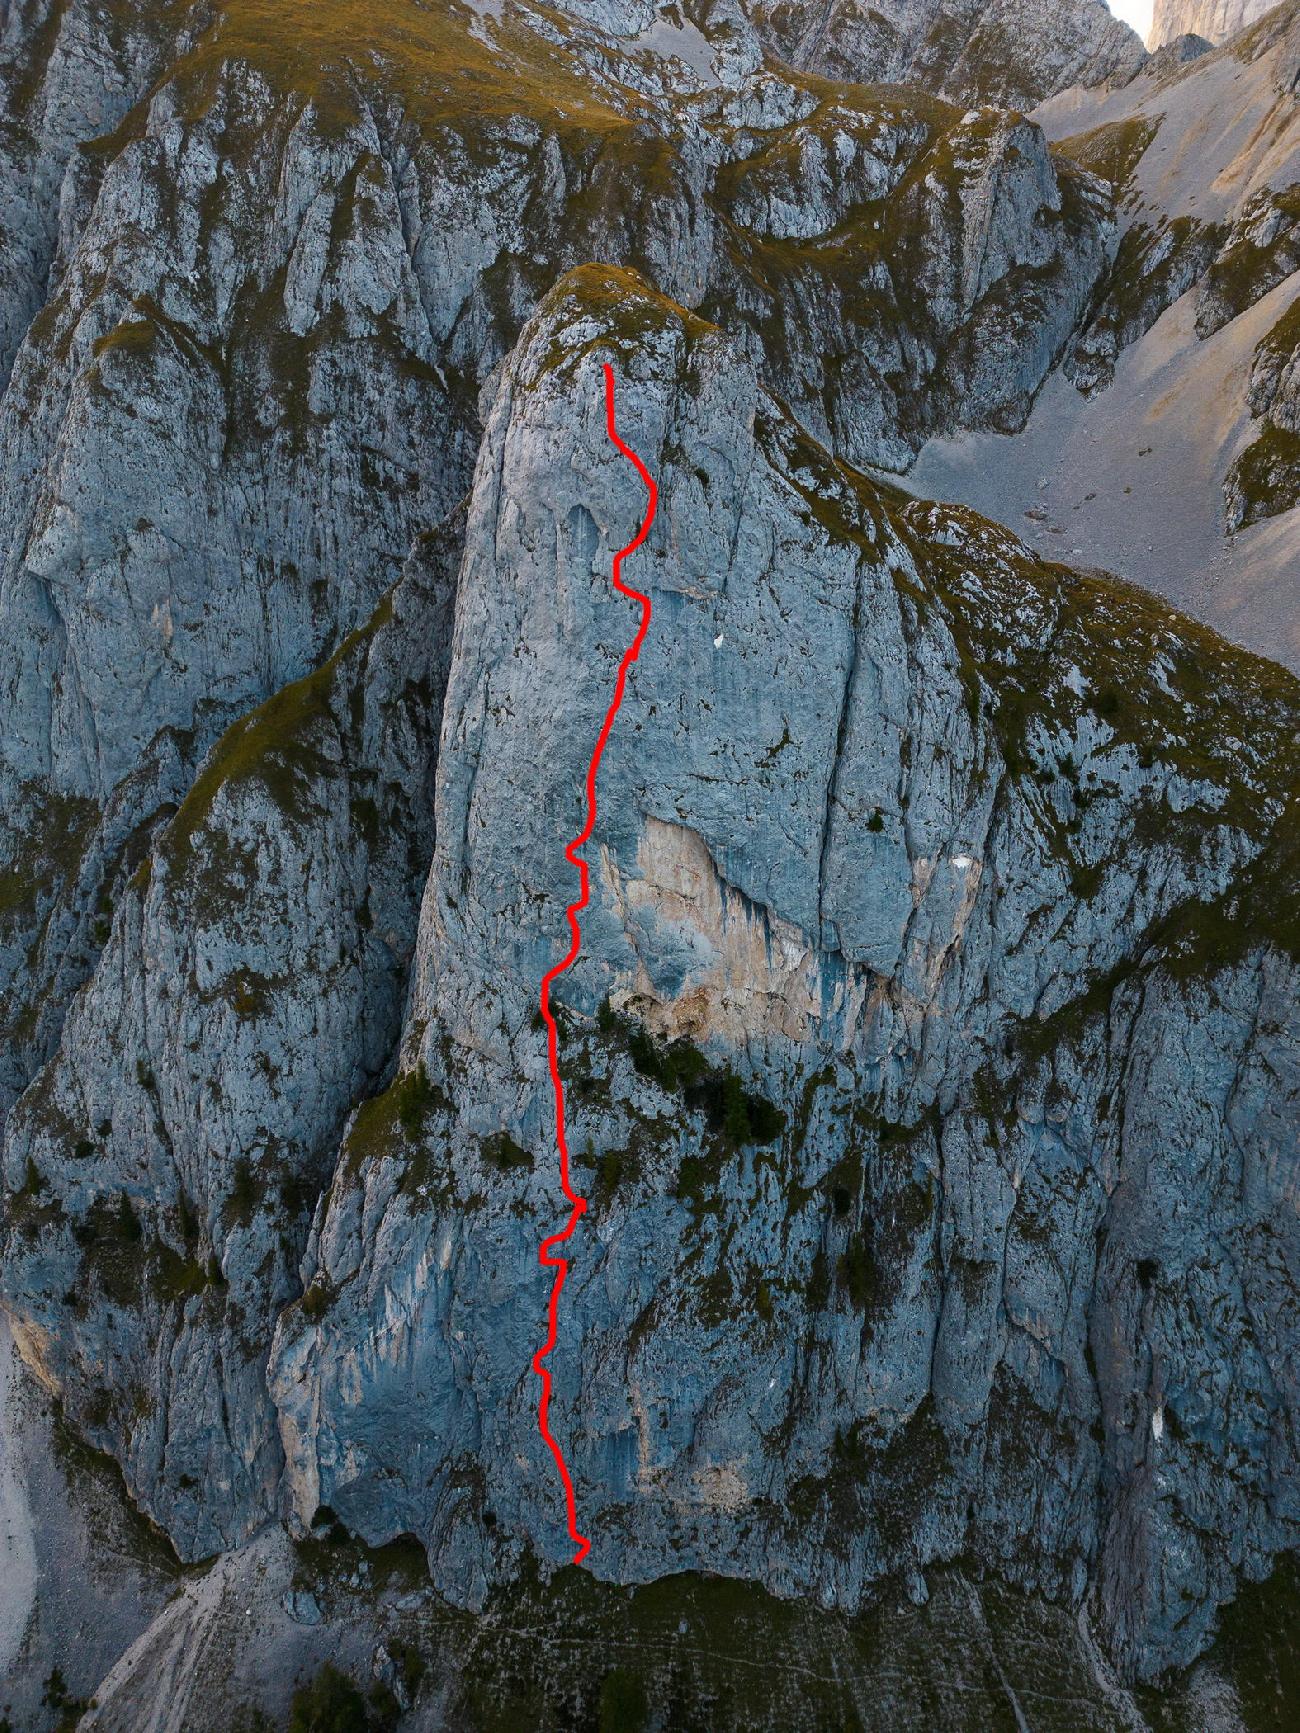 Monte Fop, Dolomites, Federico Dell'Antone, Giovanni Zaccaria